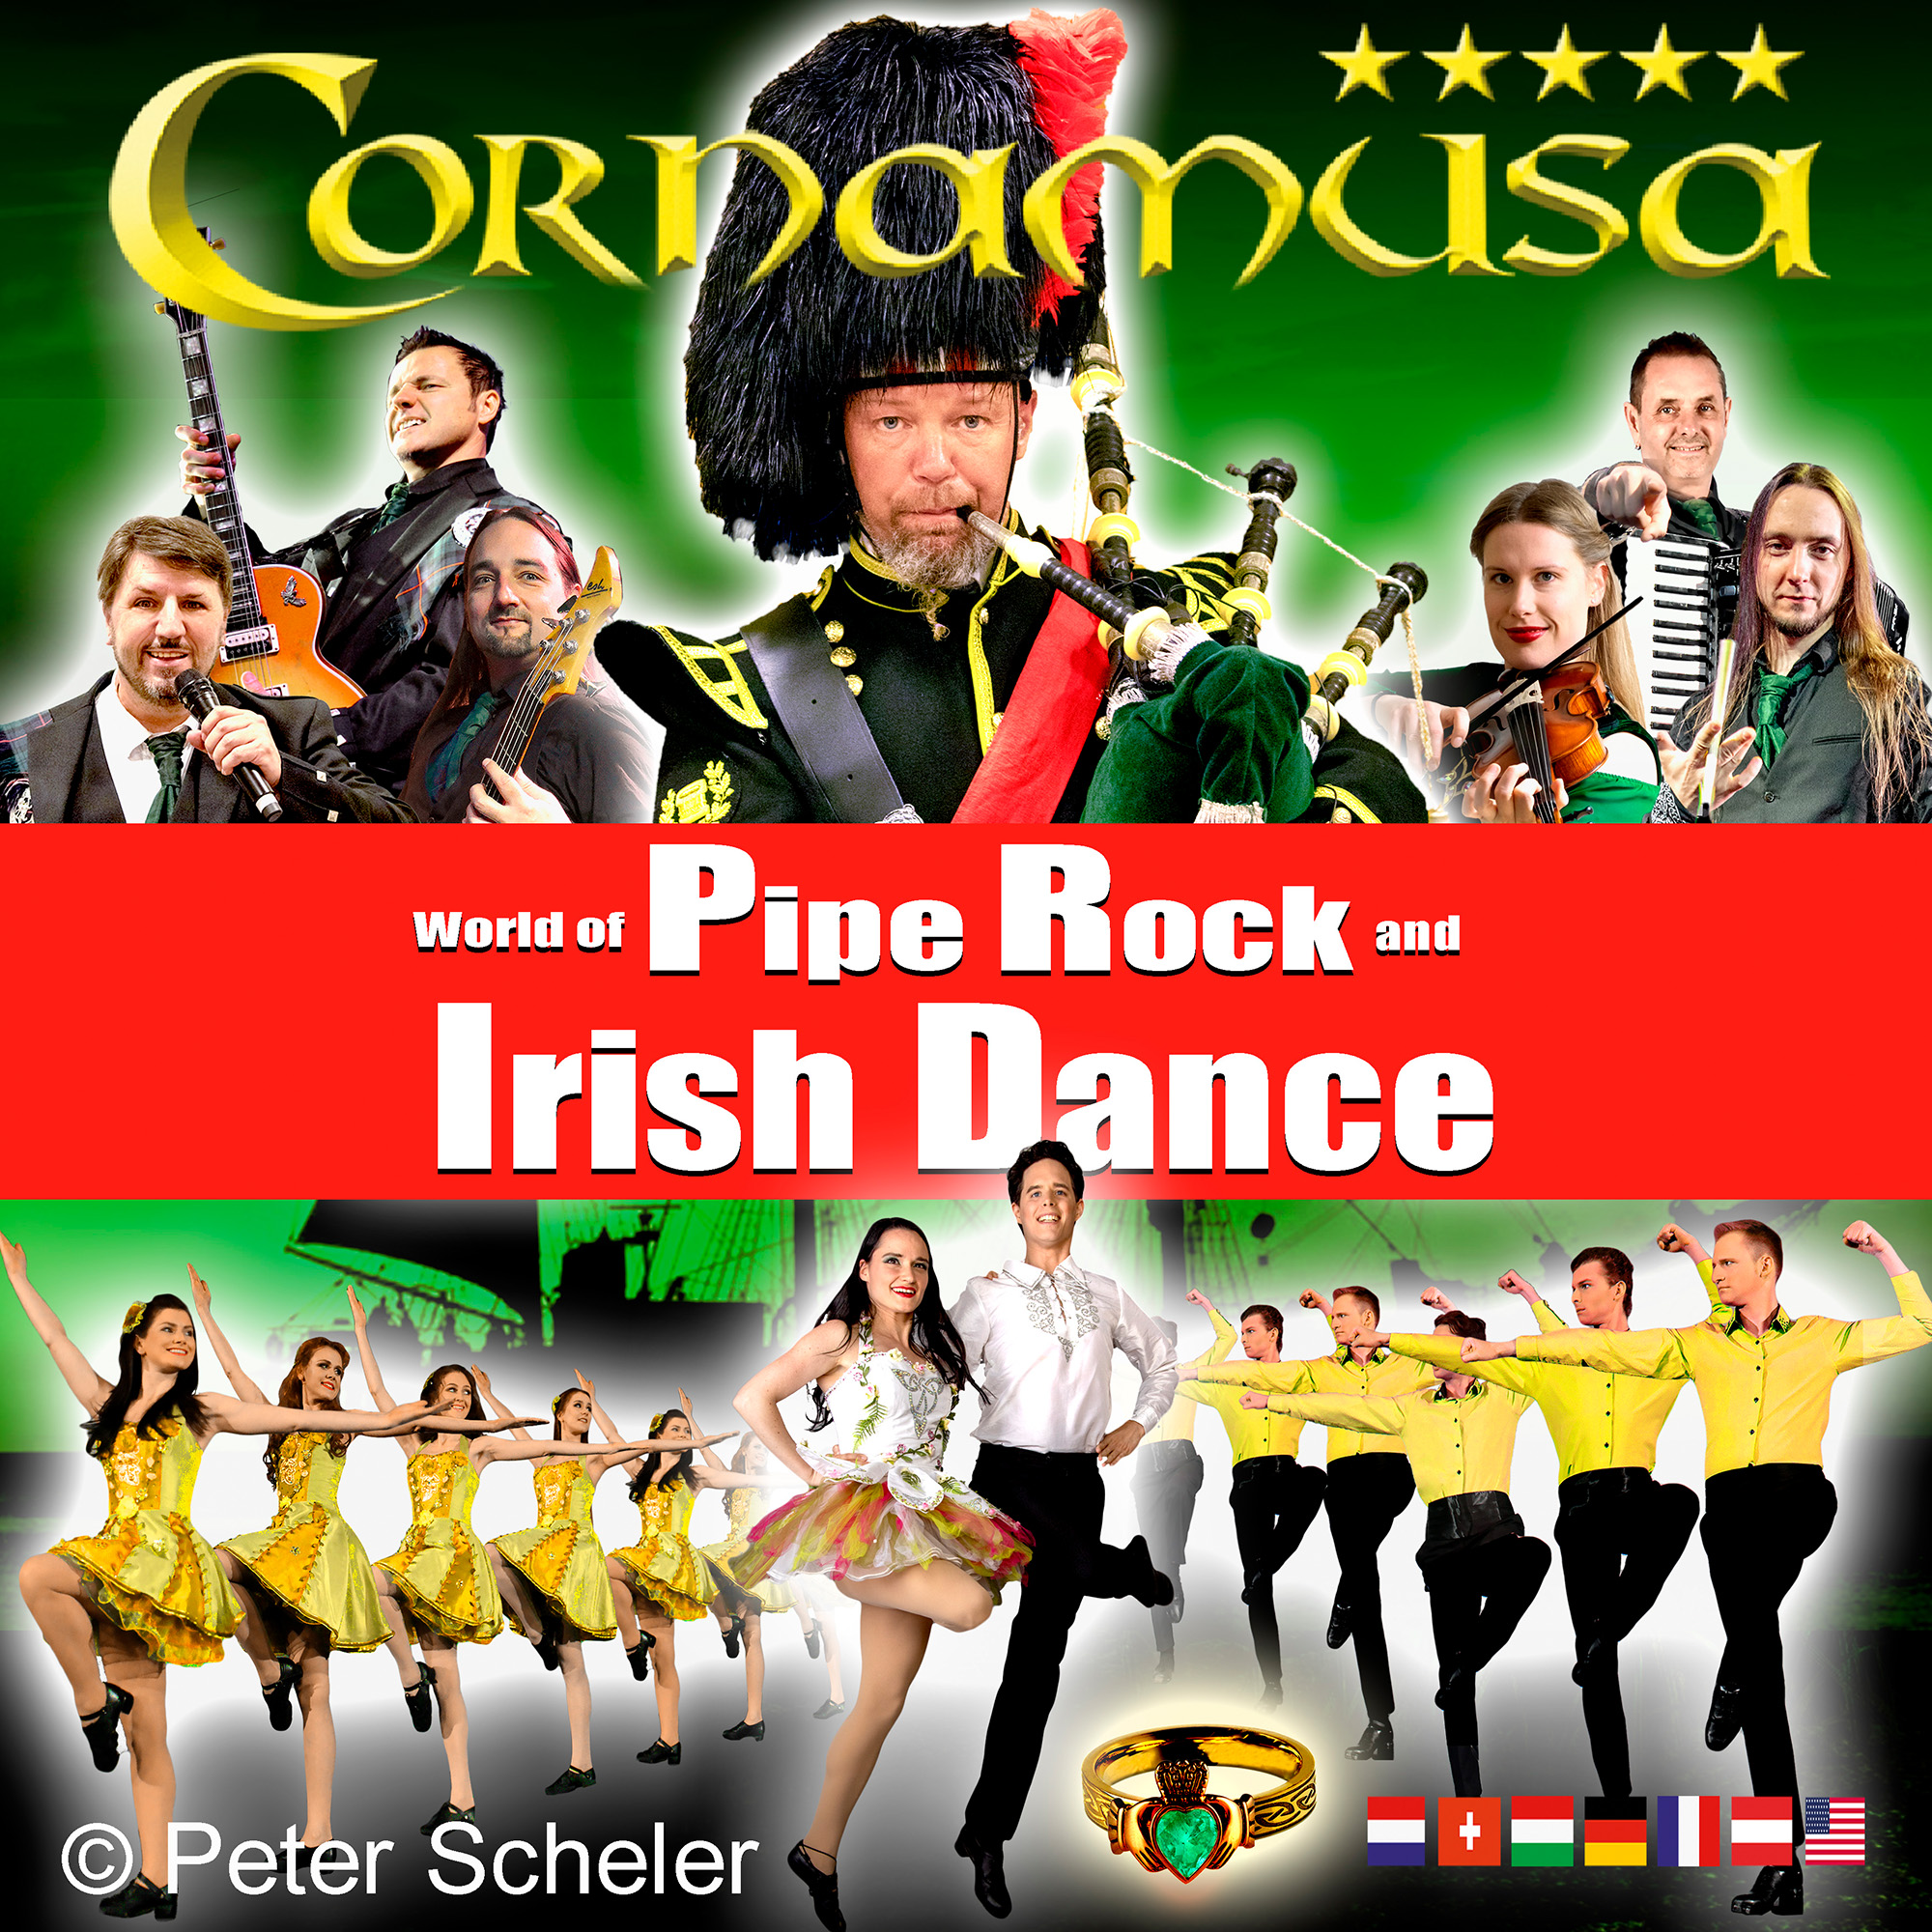 CORNAMUSA World of Pipe Rock and Irish Dance Musical